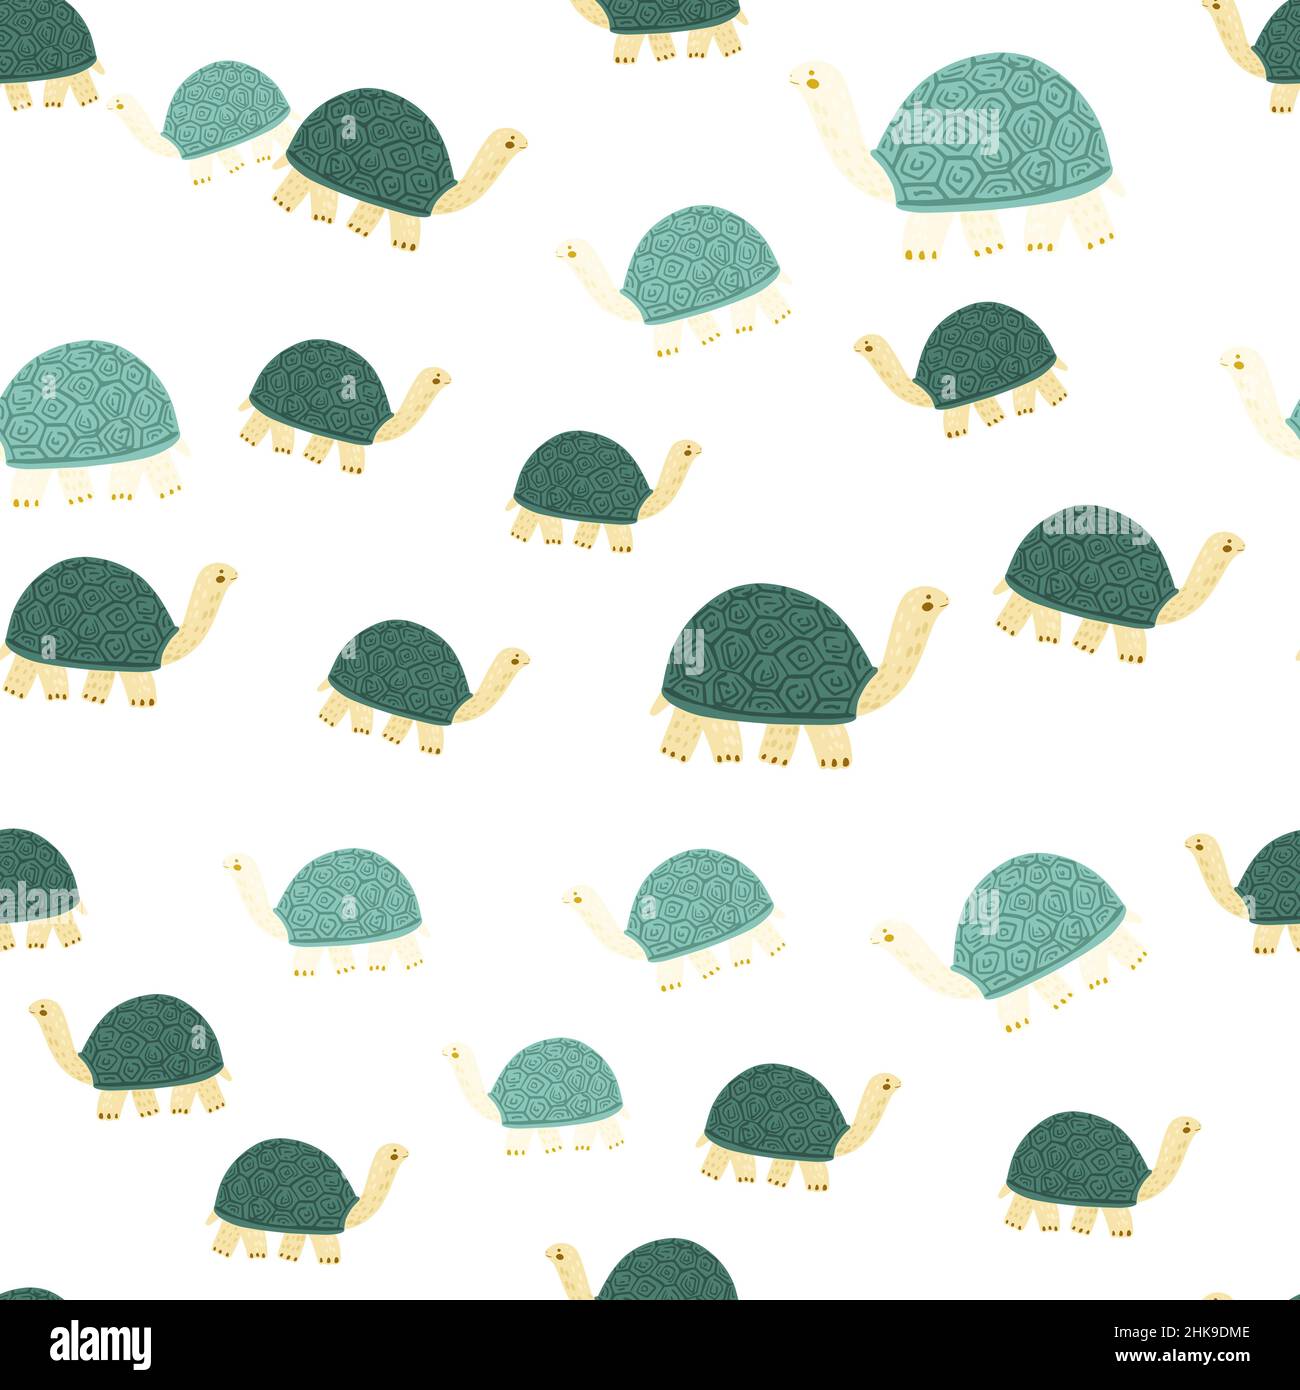 cute turtle wallpaper